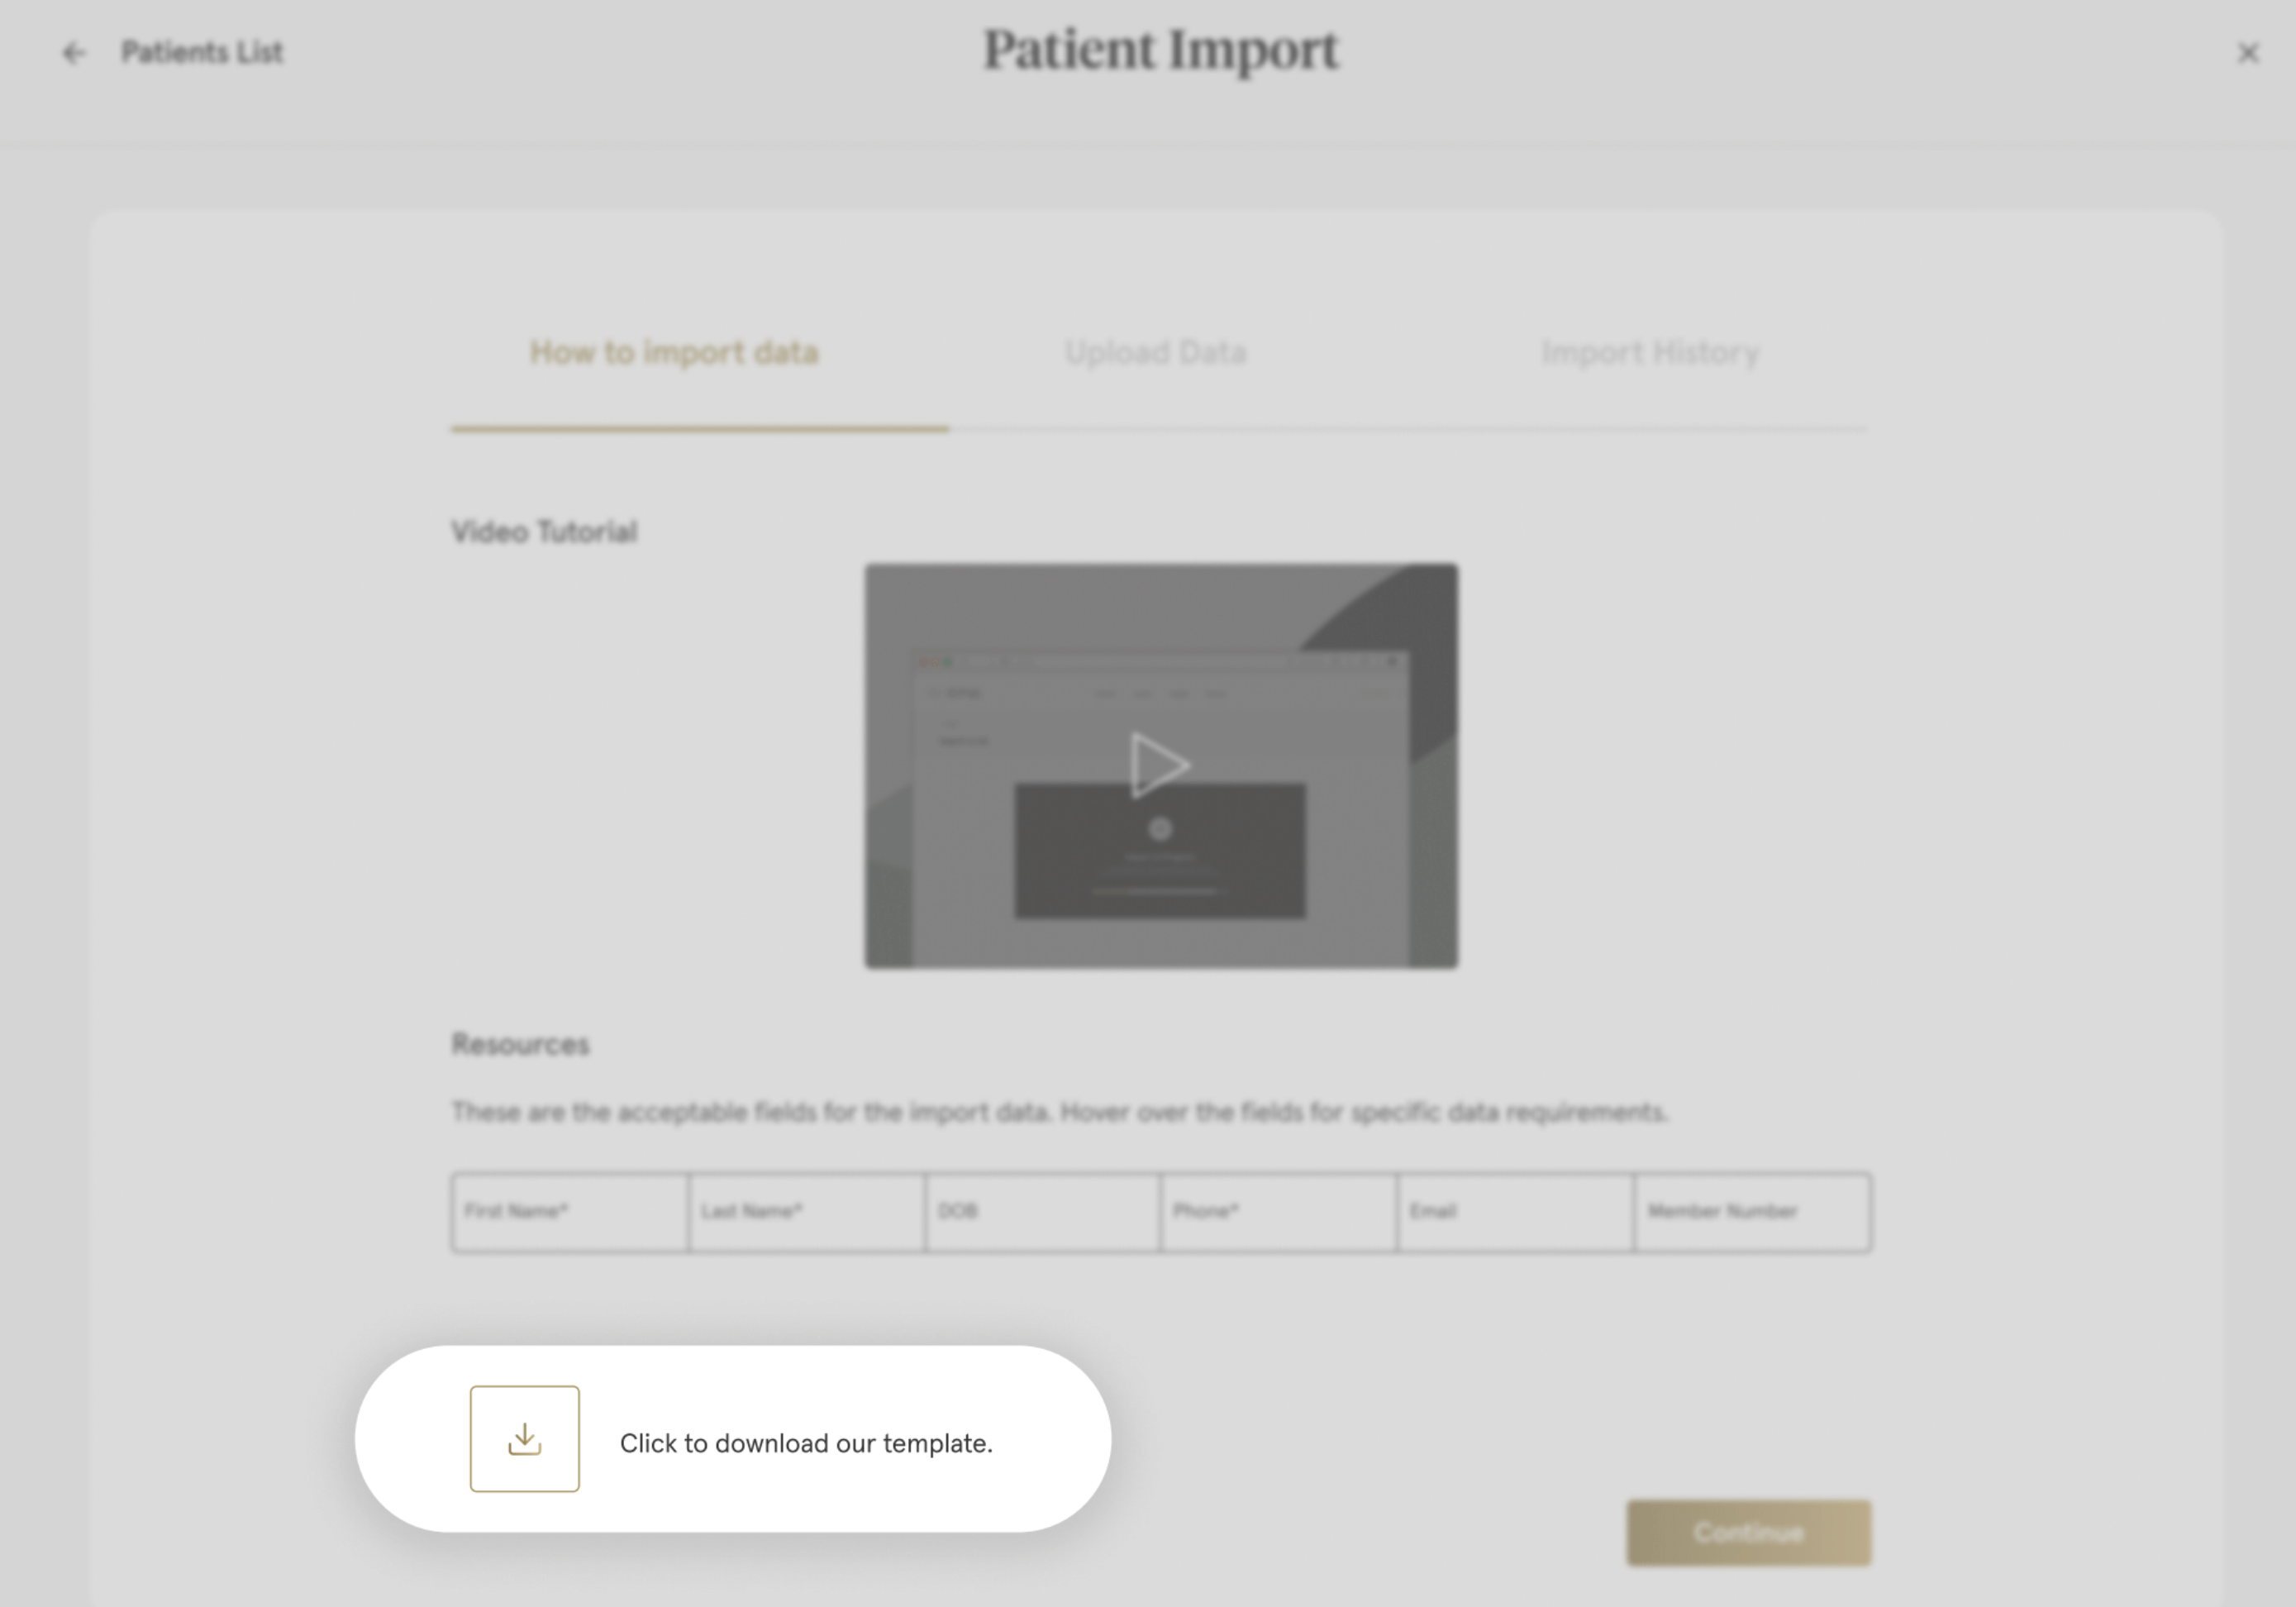 Step_3-Patient_Import.png